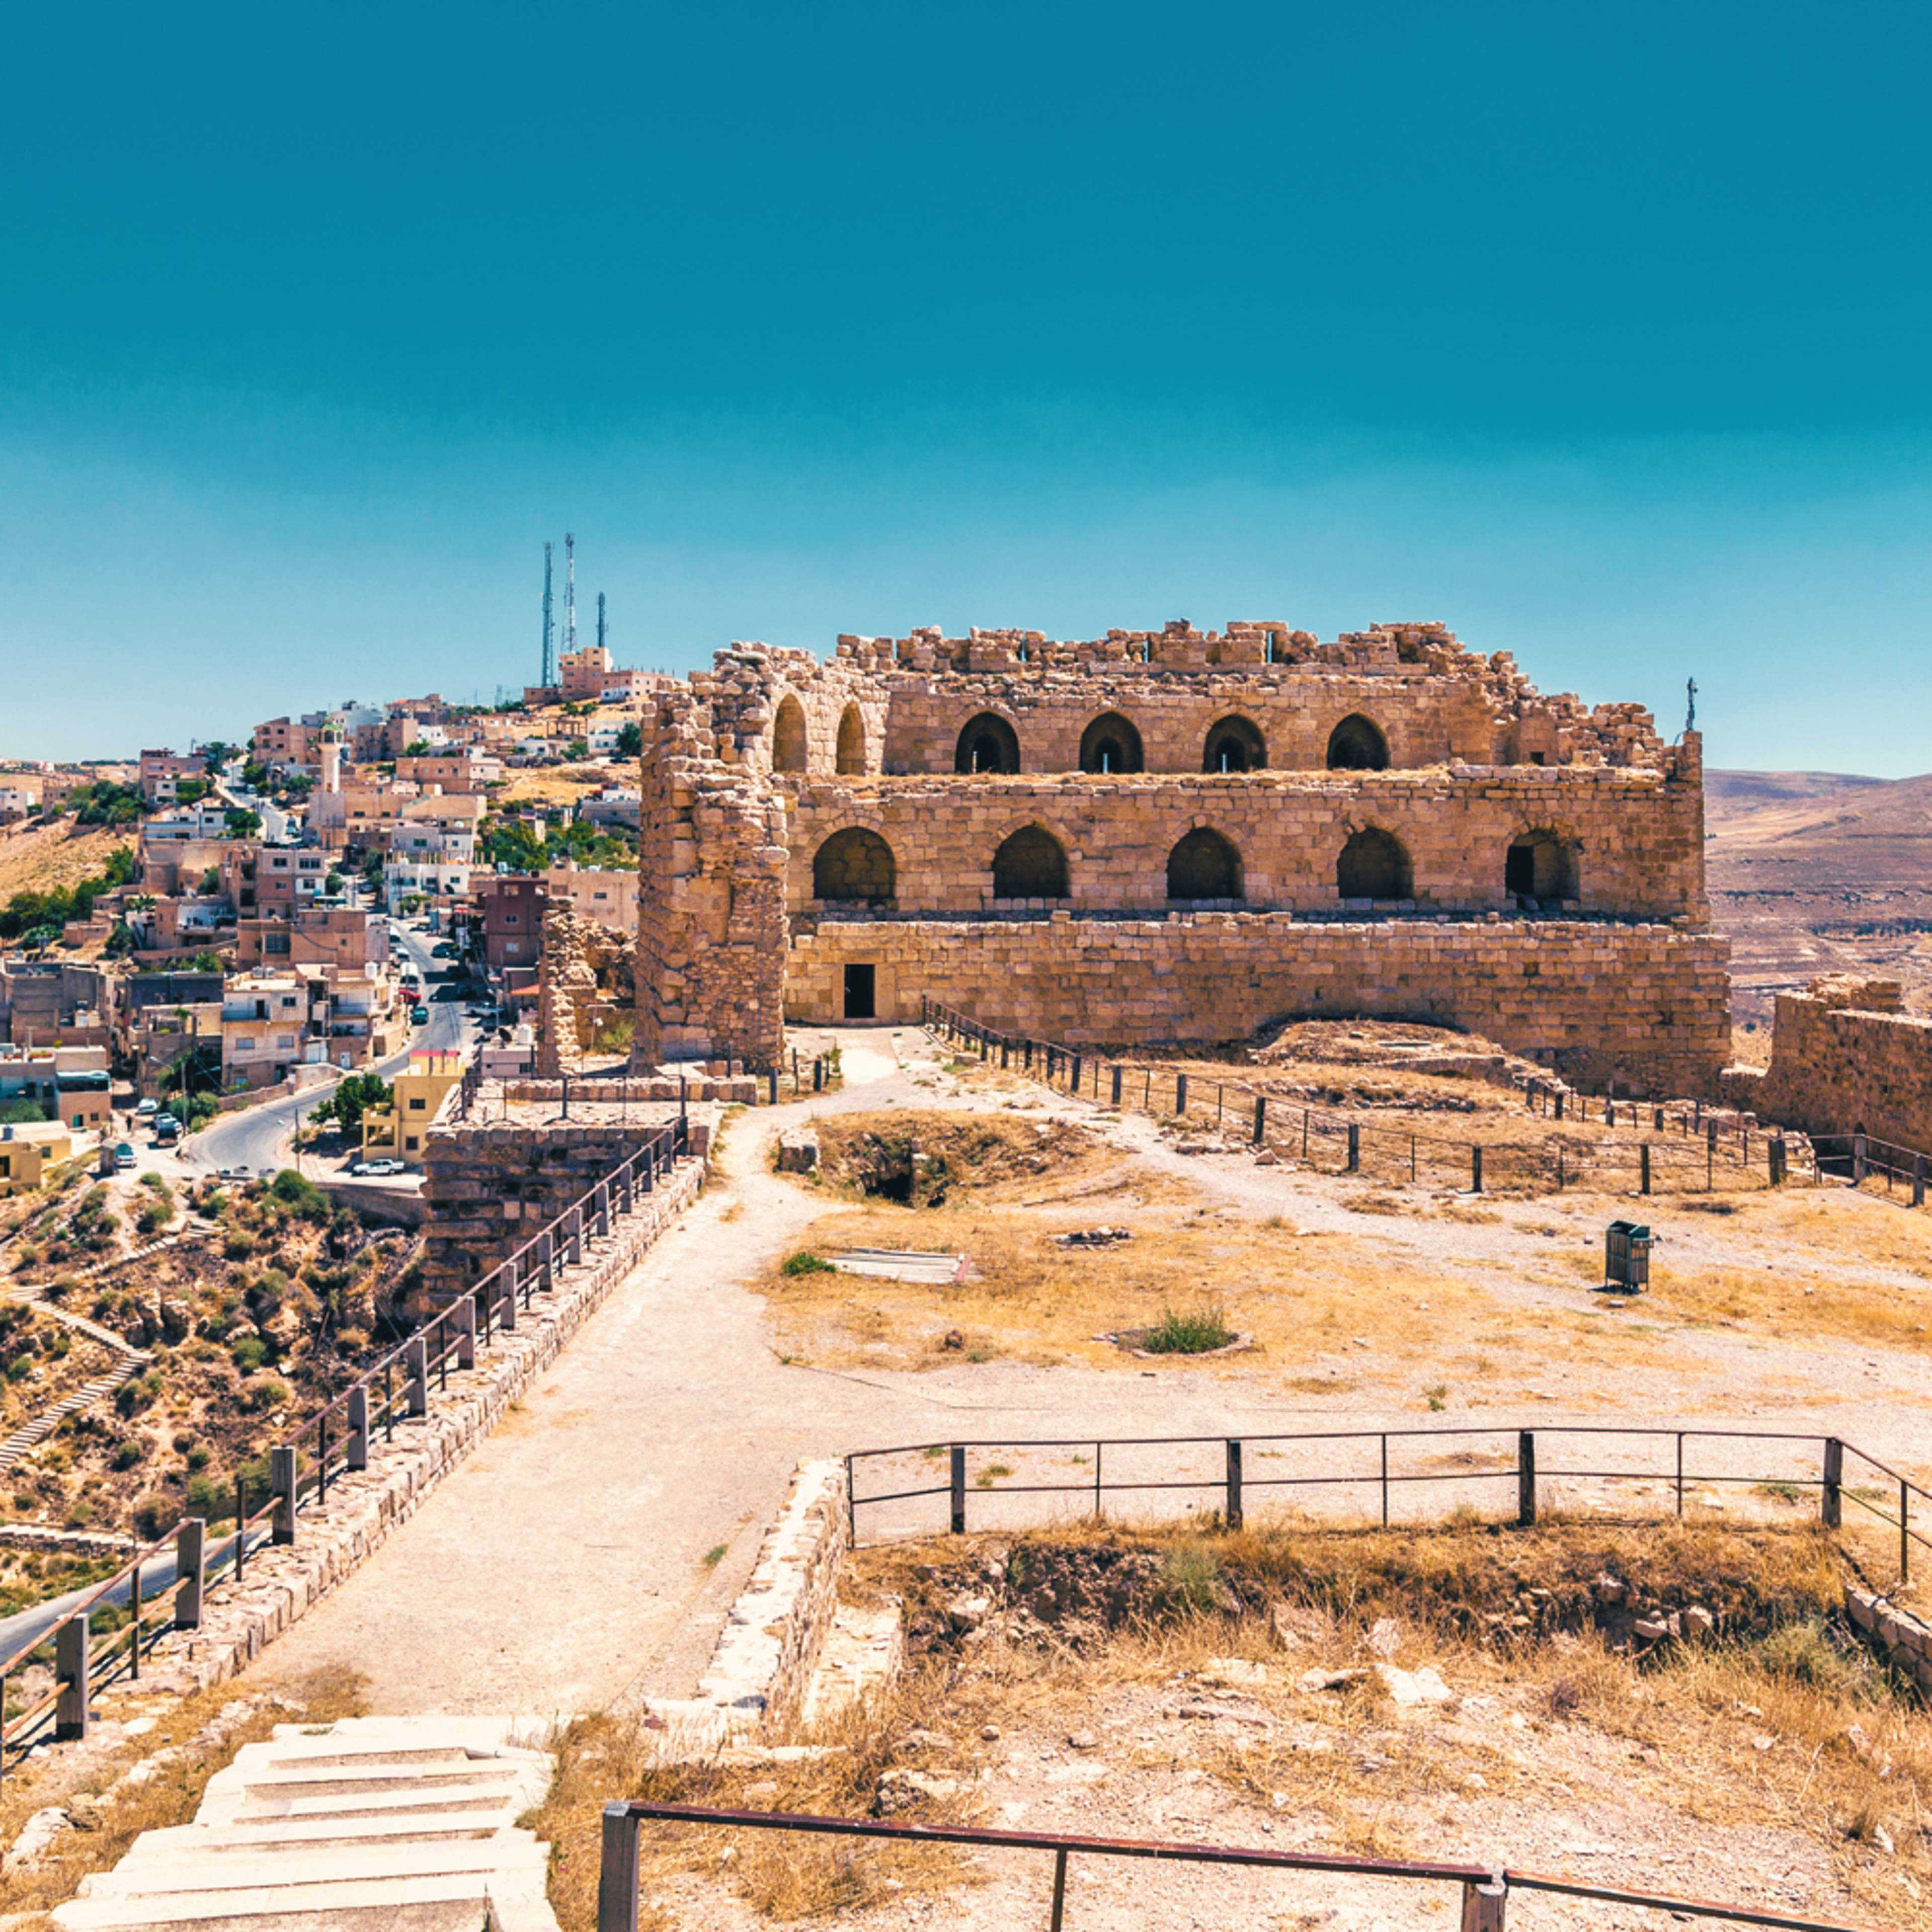 Crea tu viaje a Jordania en verano 100% a medida